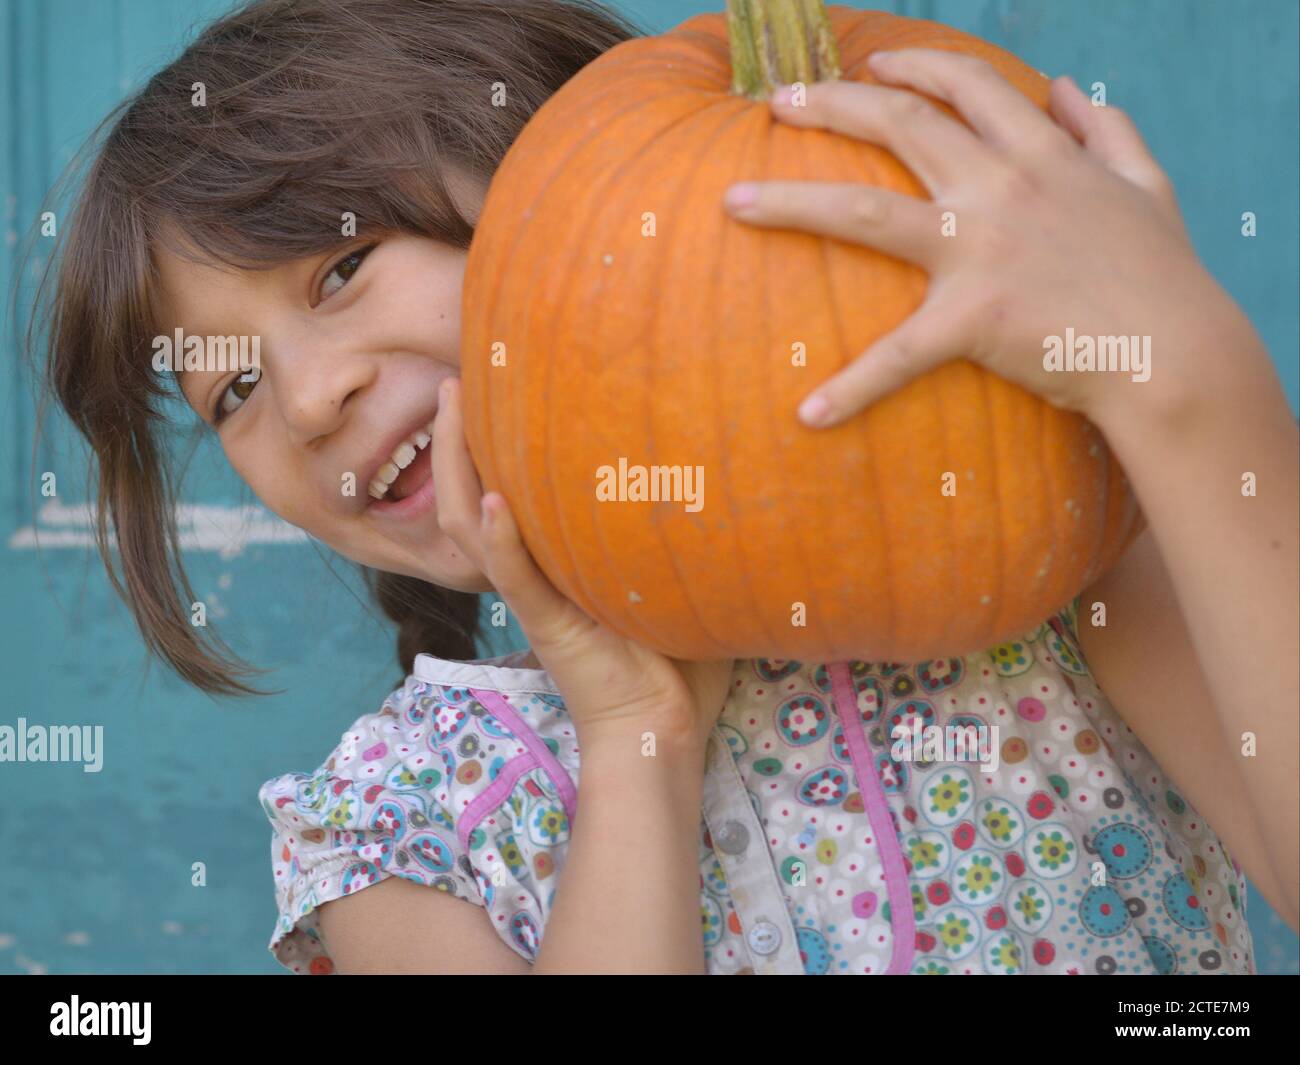 Petite fille canadienne de race mixte (caucasienne et asiatique du Sud-est) tient une grosse citrouille avec les deux mains et sourires à l'appareil photo. Banque D'Images